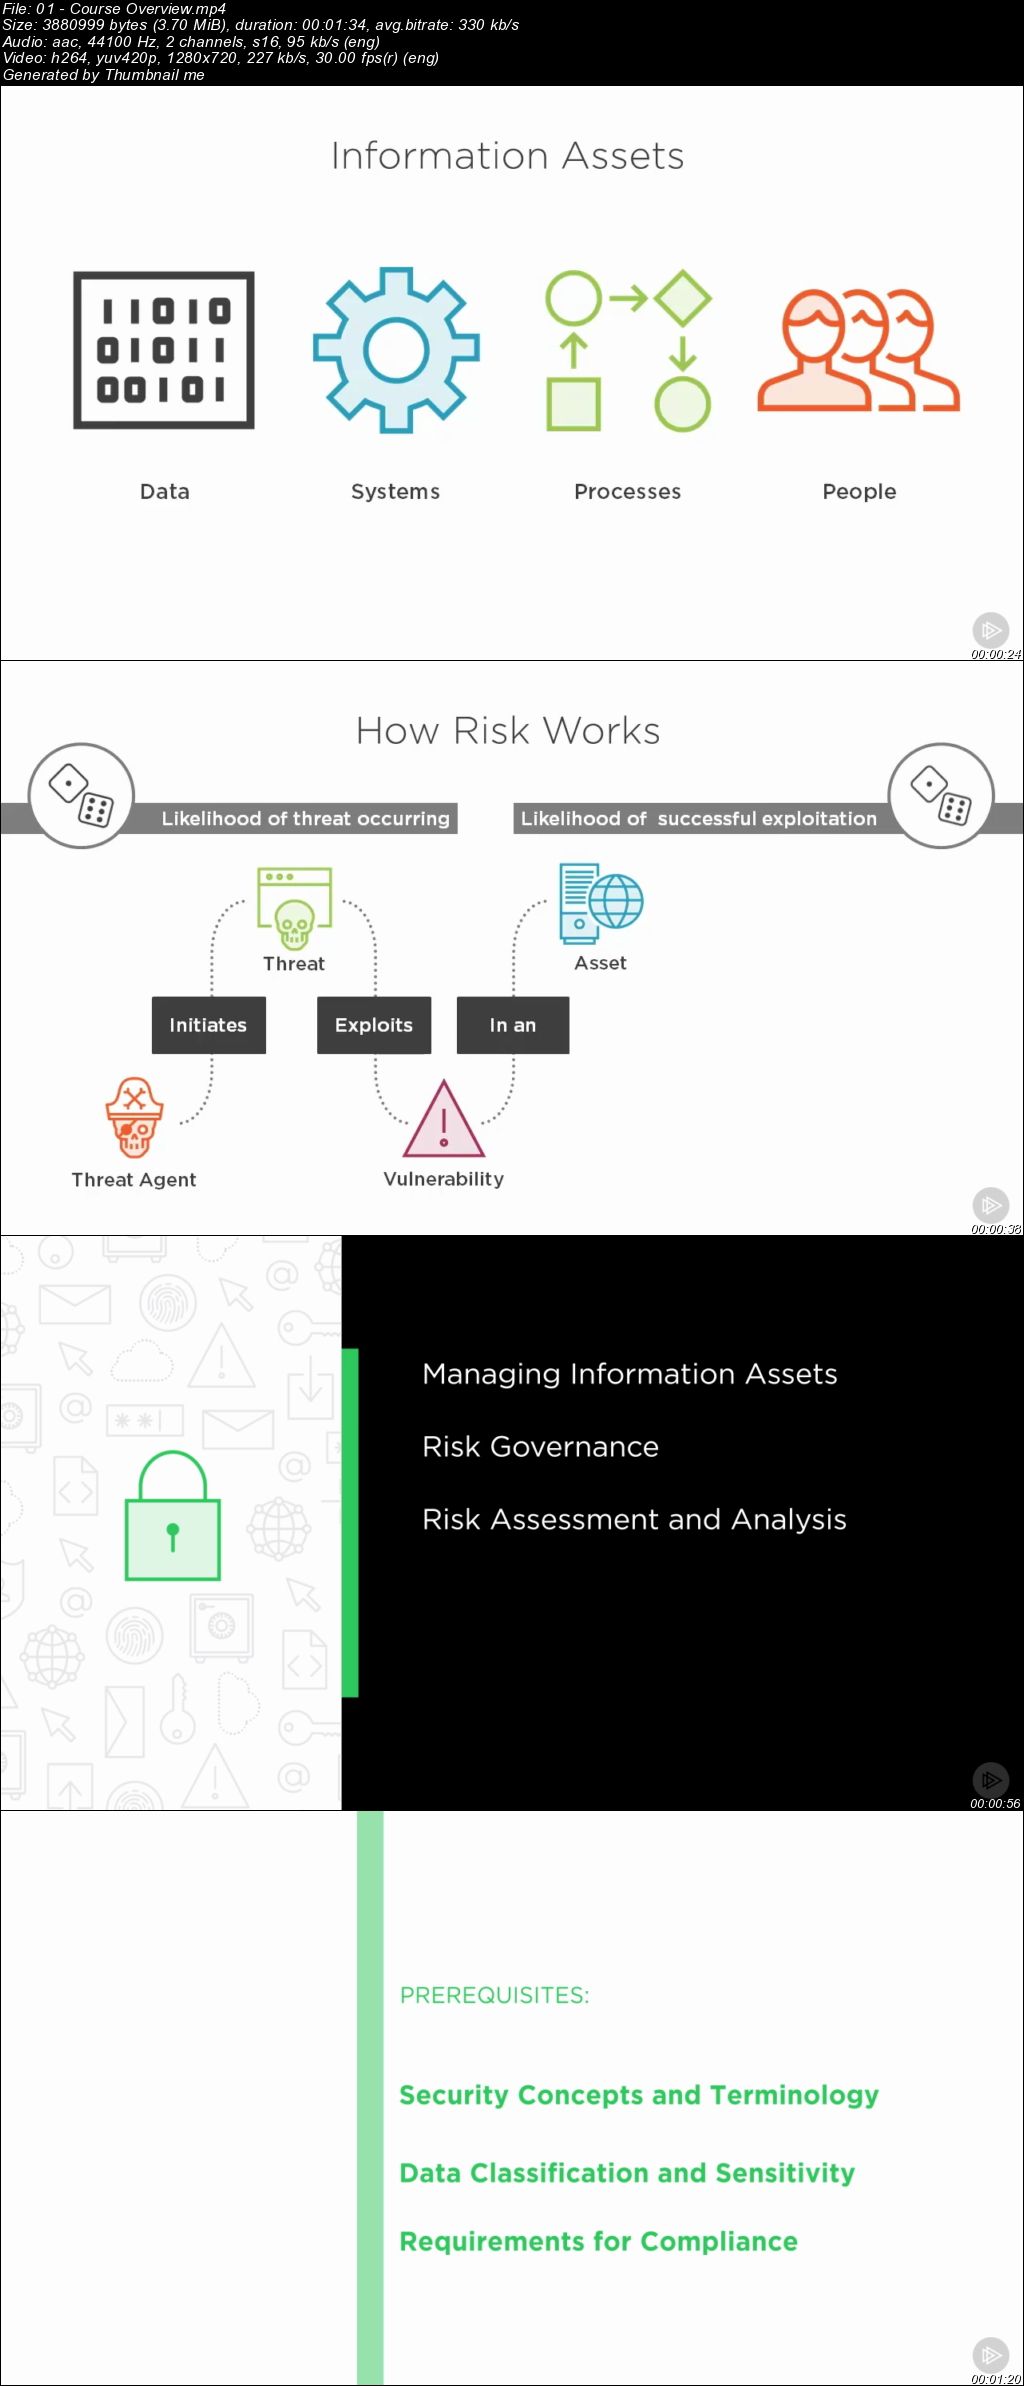 Information Security Manager: Information Risk Management